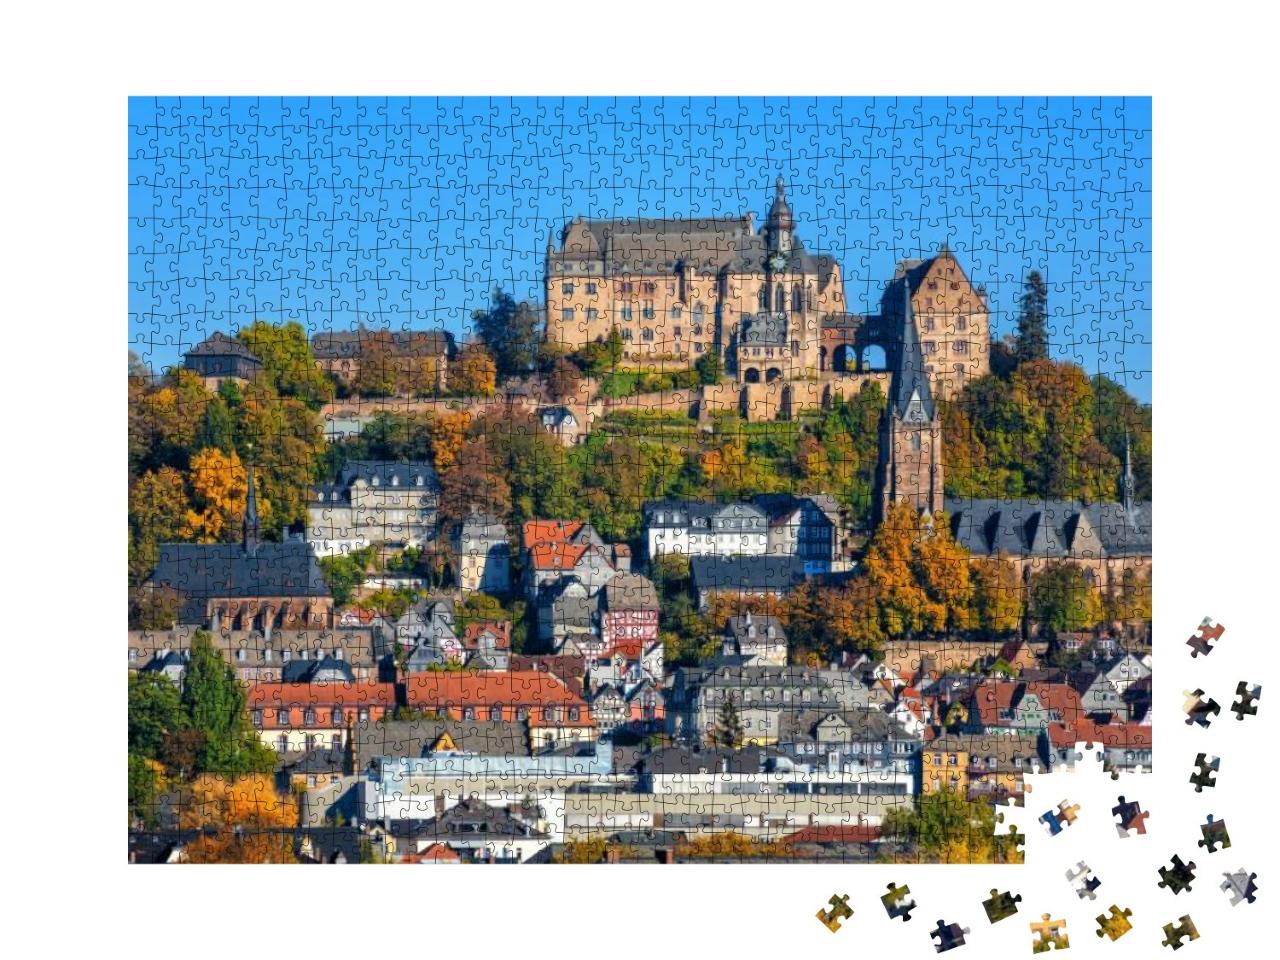 Puzzle 1000 Teile „Marburg an der Lahn: Landgrafenschloss und bunte Fachwerkhäuser“